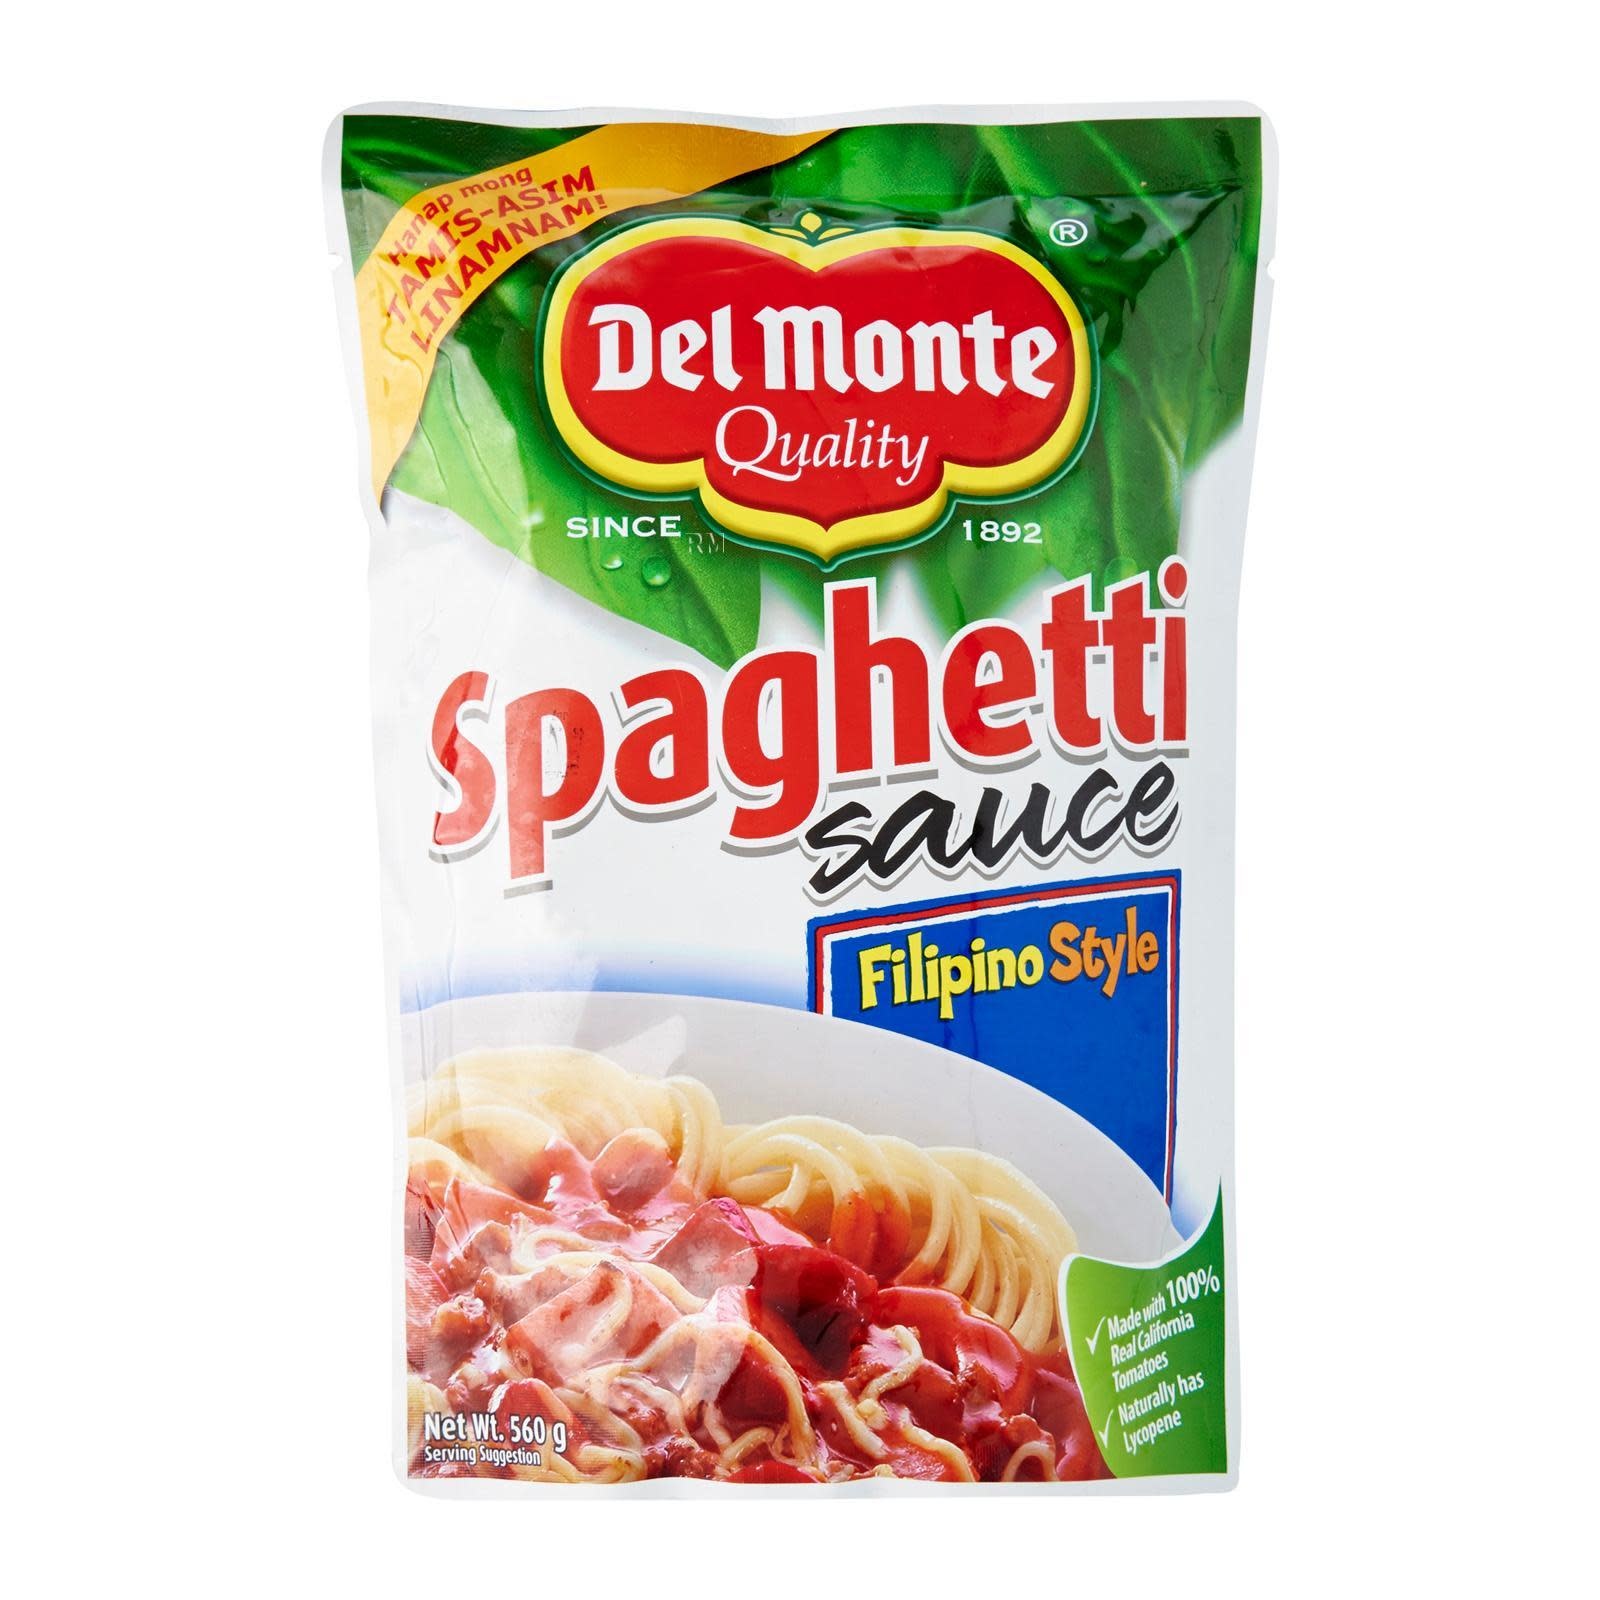 Del Monte Spaghetti Sauce / Fillipino Style 560g - Thai Food Direct